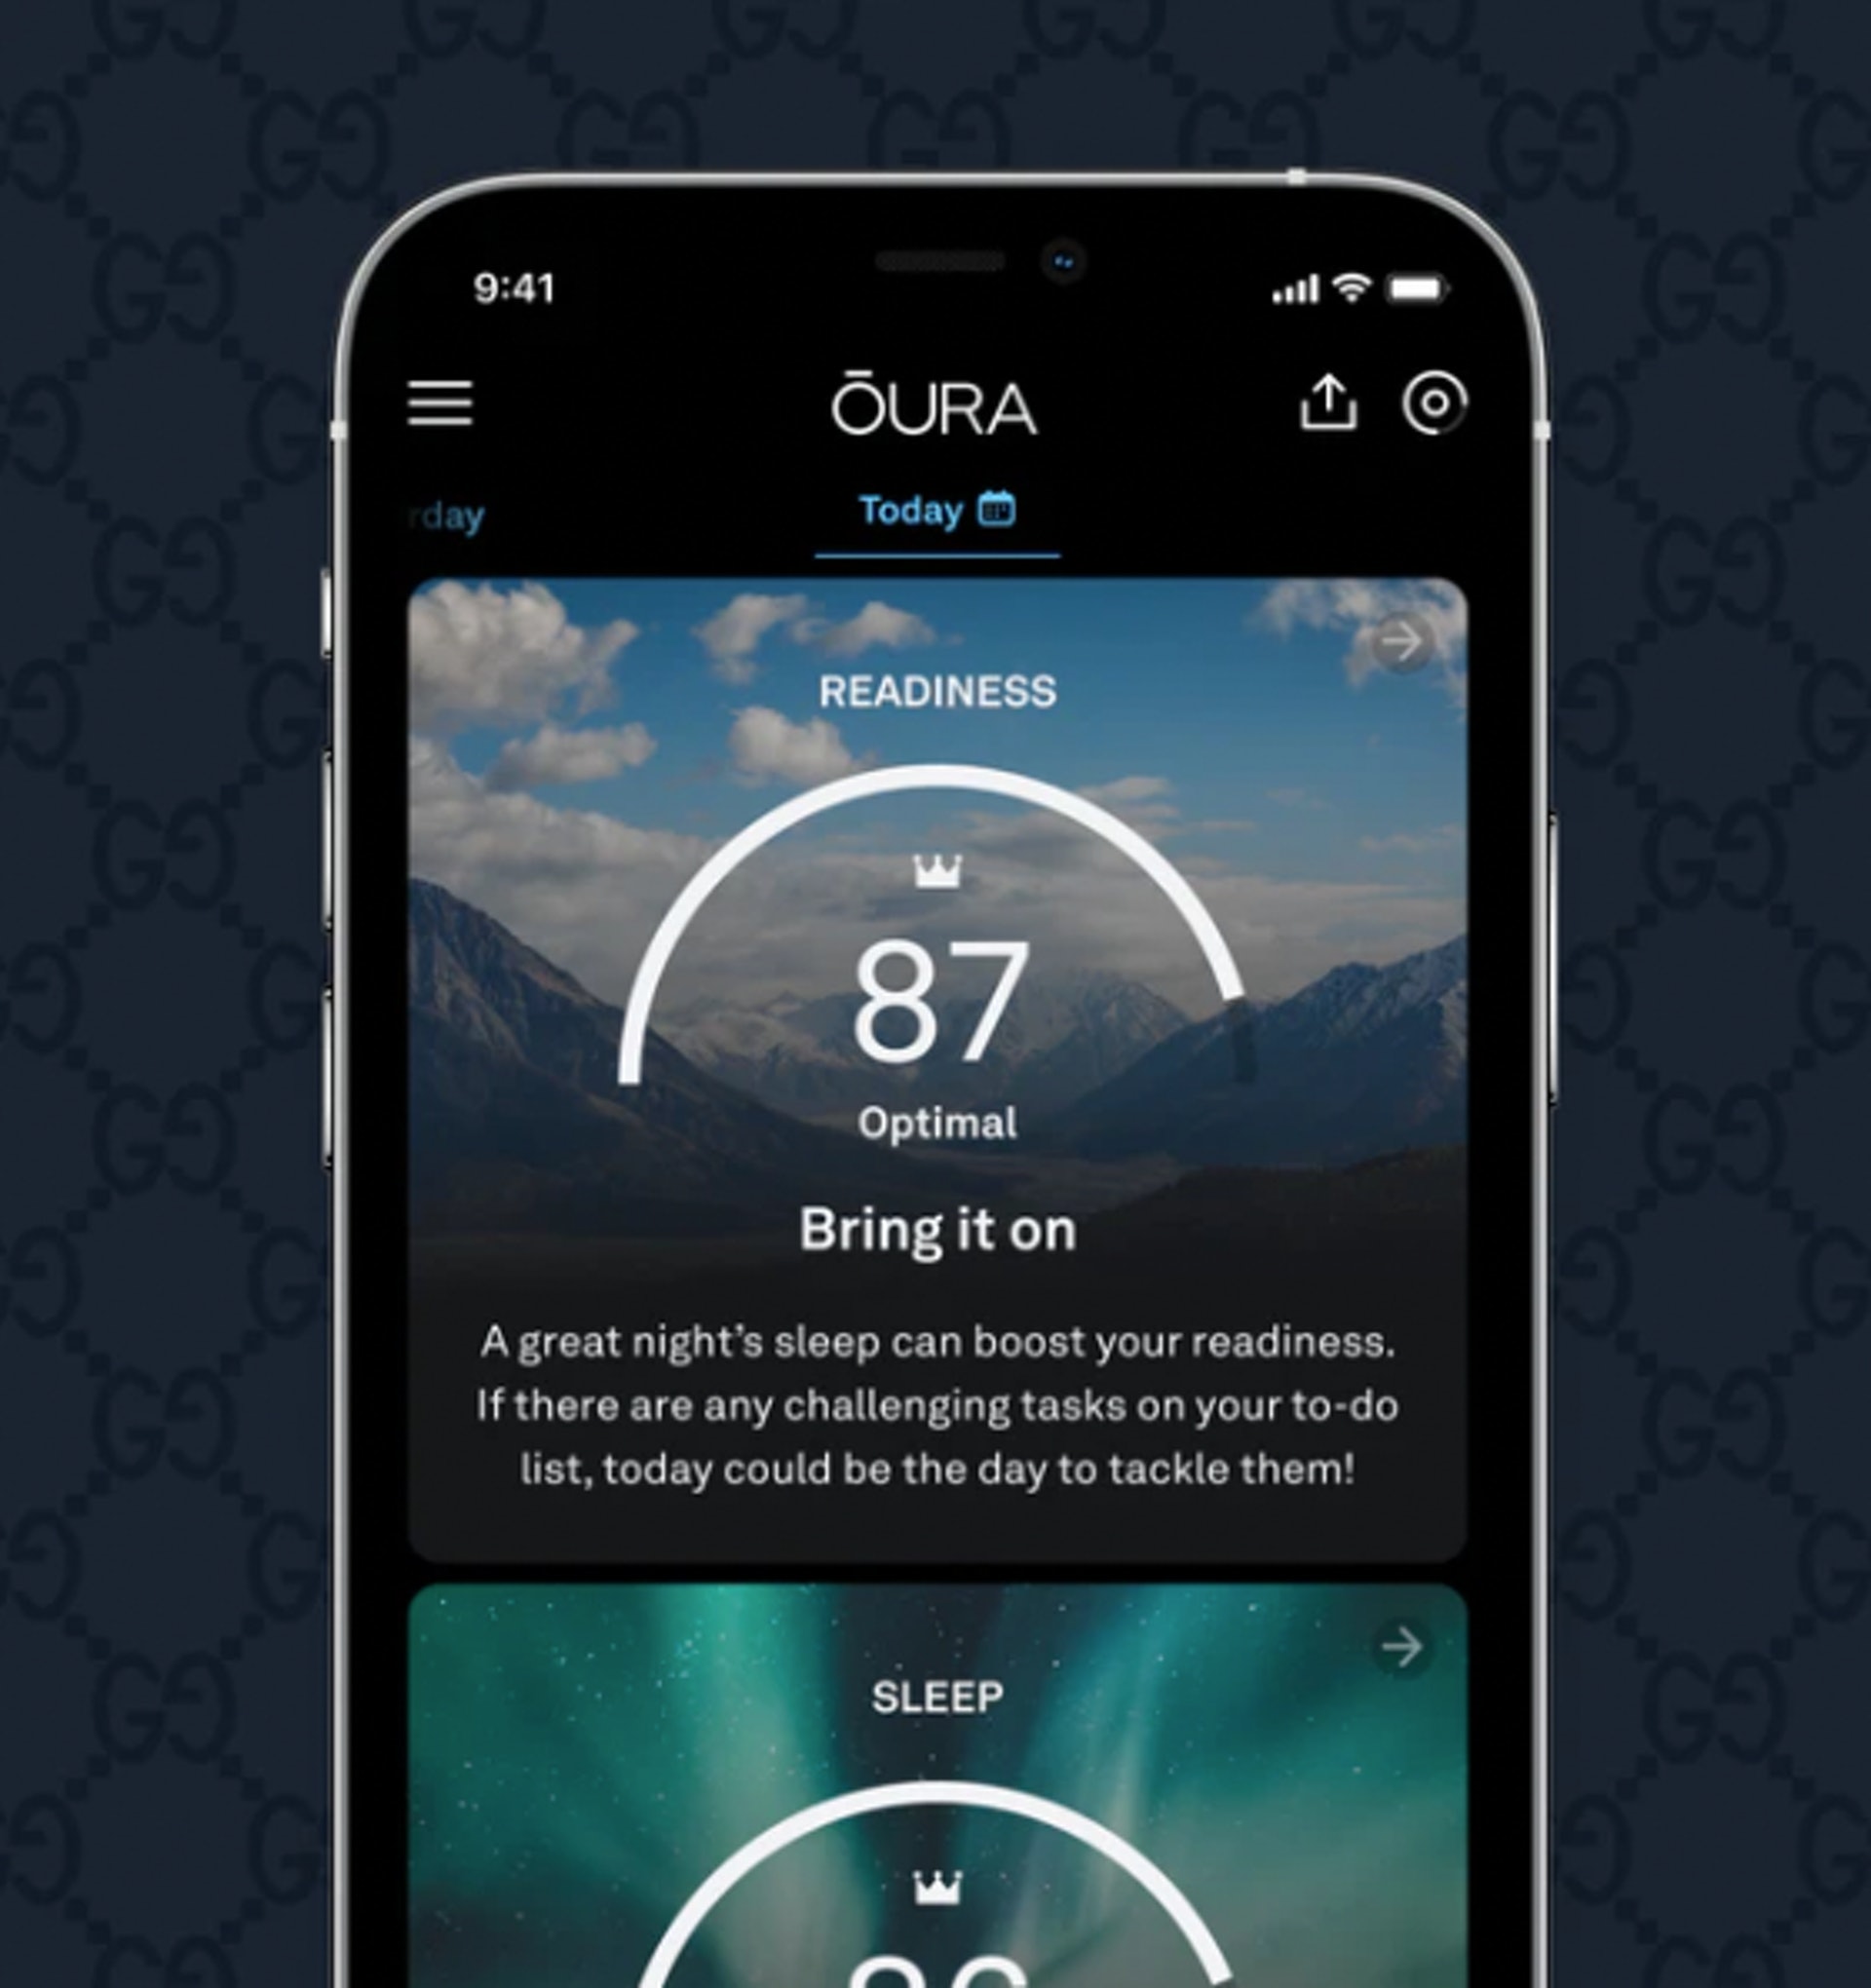 透過專用的 Oura App，用戶可以得到自己分別在睡眠（Sleep）、活動（Activity）及準備情況（Readiness）等三個日常分數，讓用戶更了解自己的身體狀況。